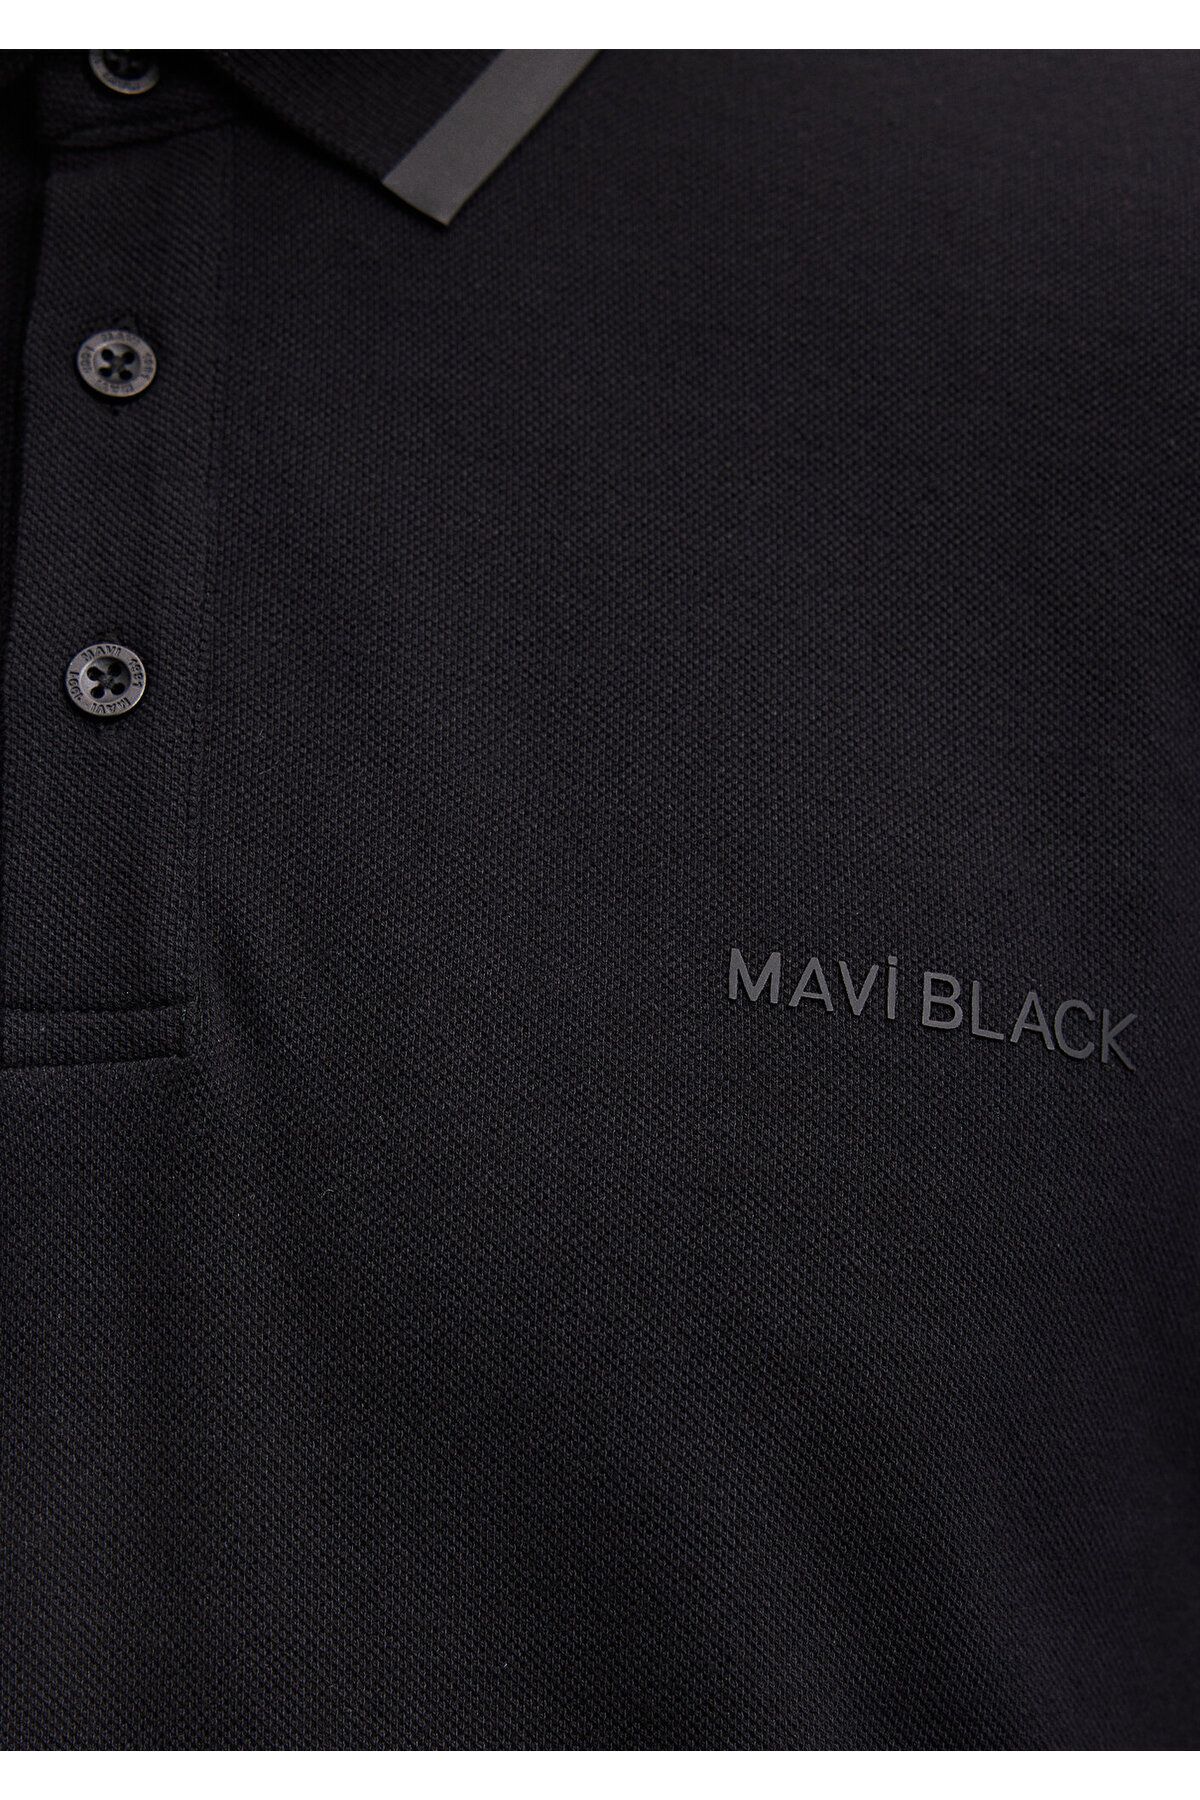 Mavi تی شرت سیاه چوگان مجهز / نشسته در بدن 0611829-900